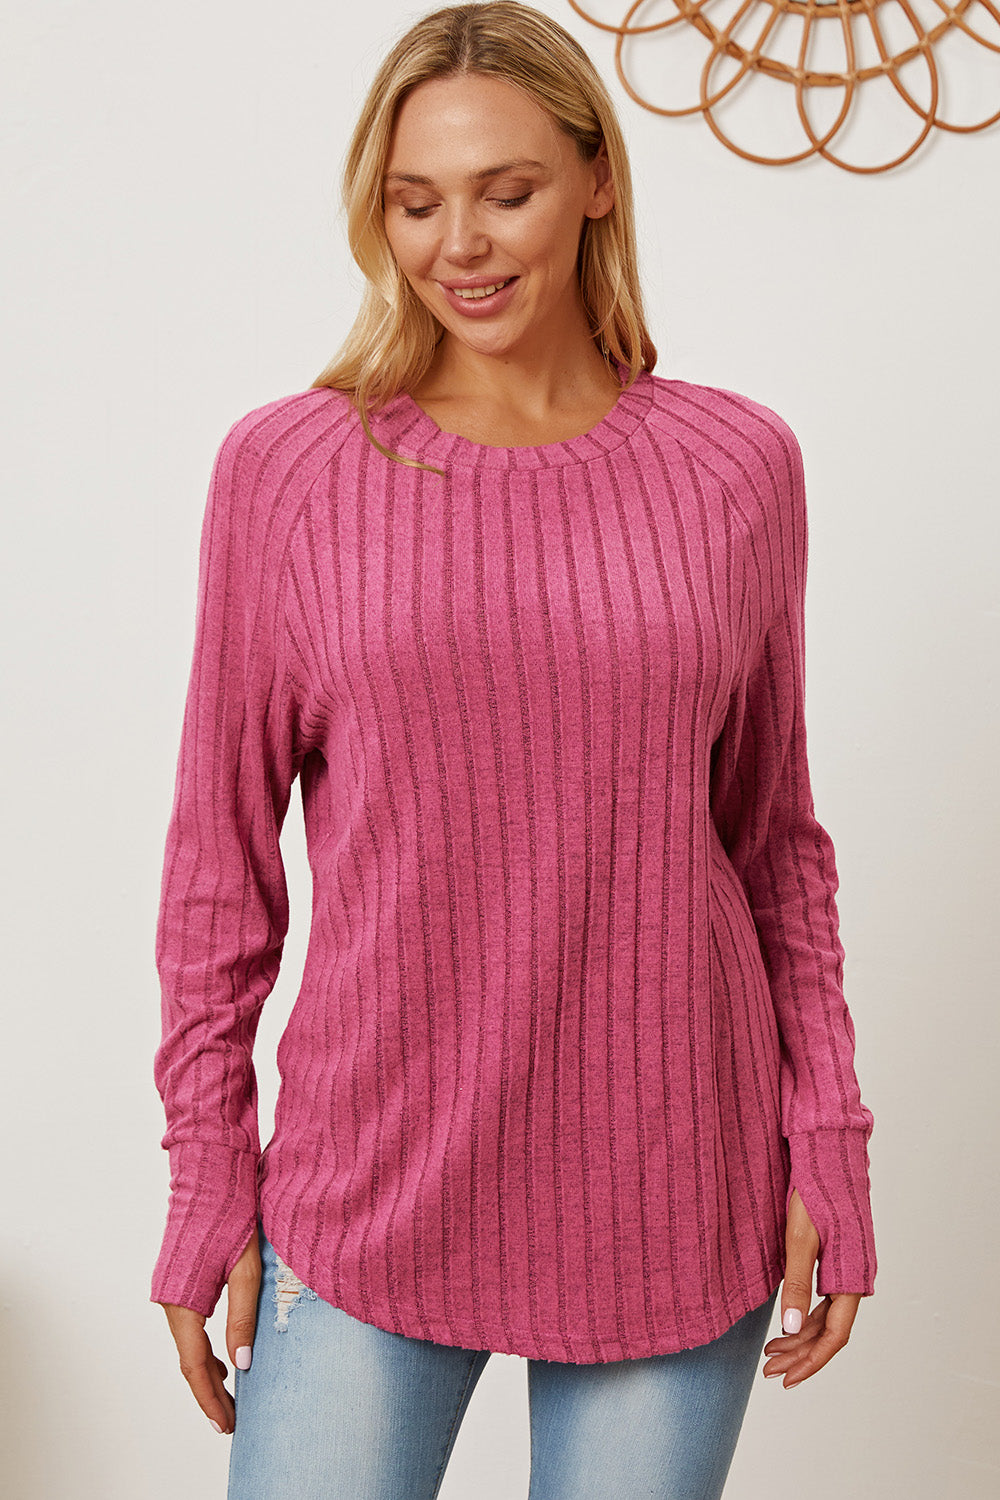  Ribbed Thumbhole Sleeve Pink T-Shirt